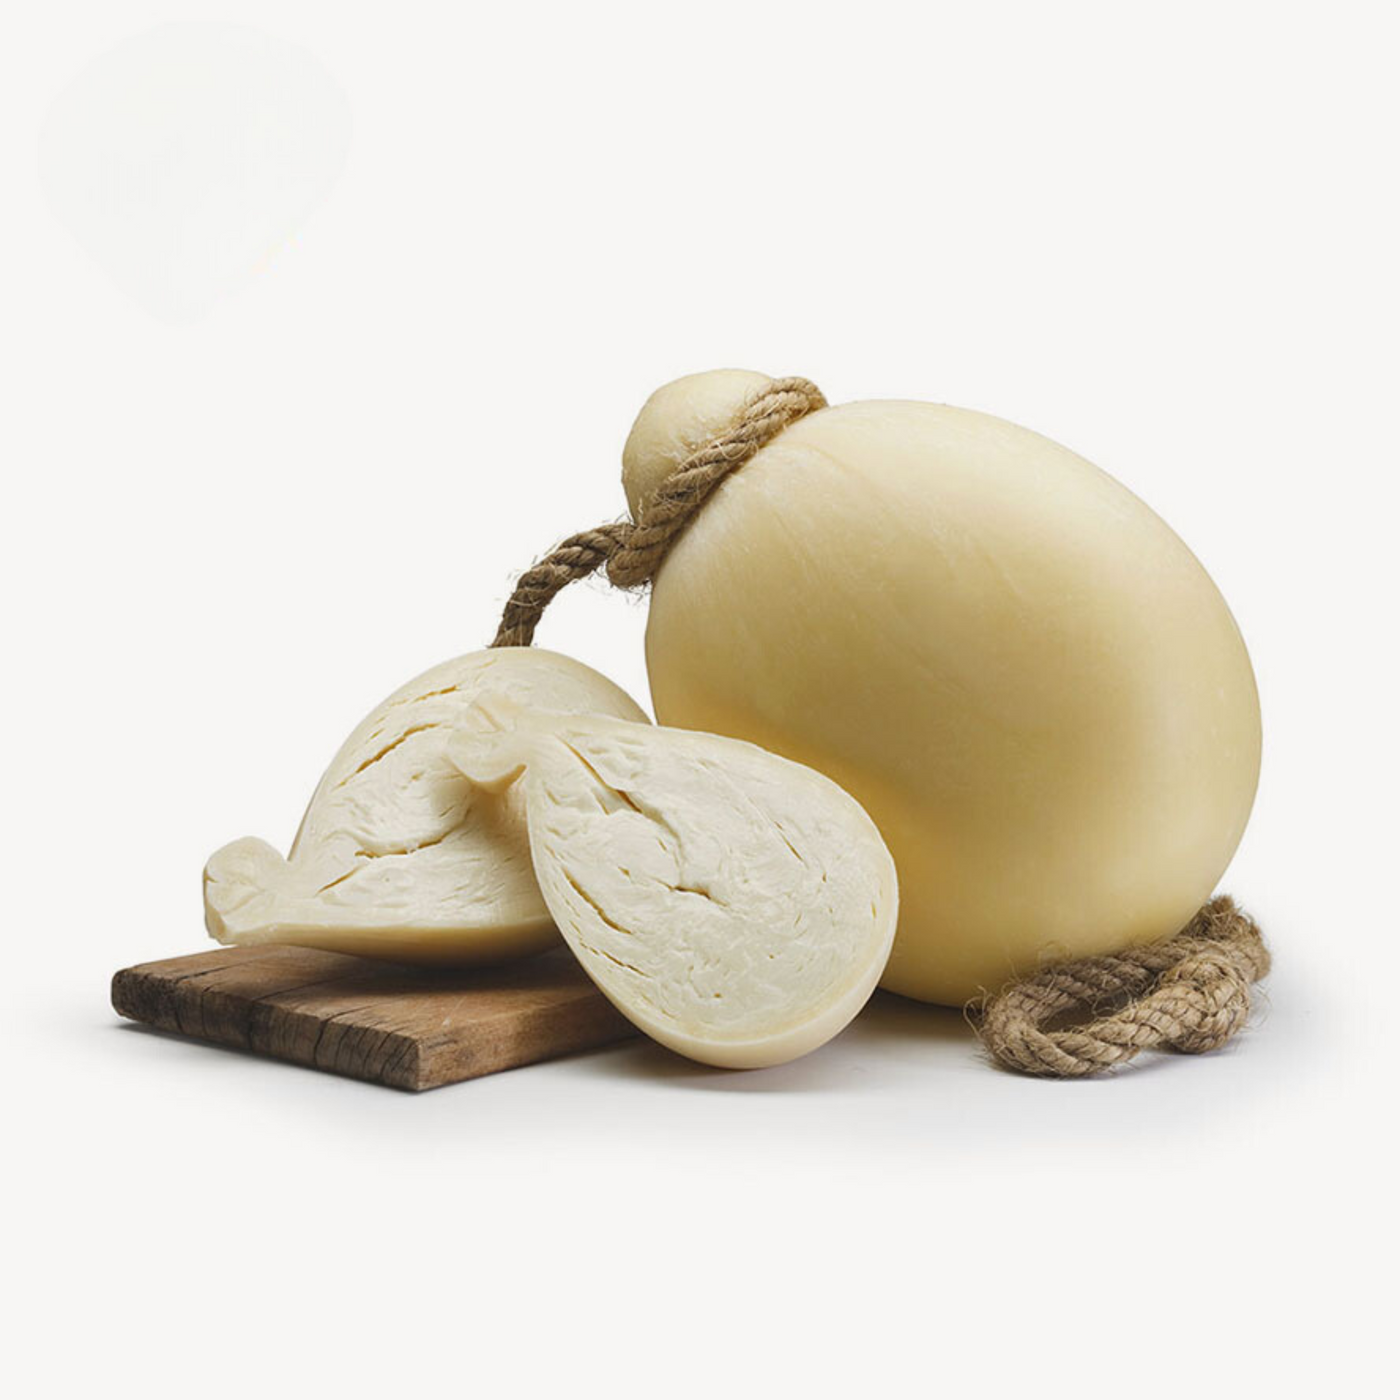 Provolone vieilli sicilien : la perfection du fromage italien authentique 